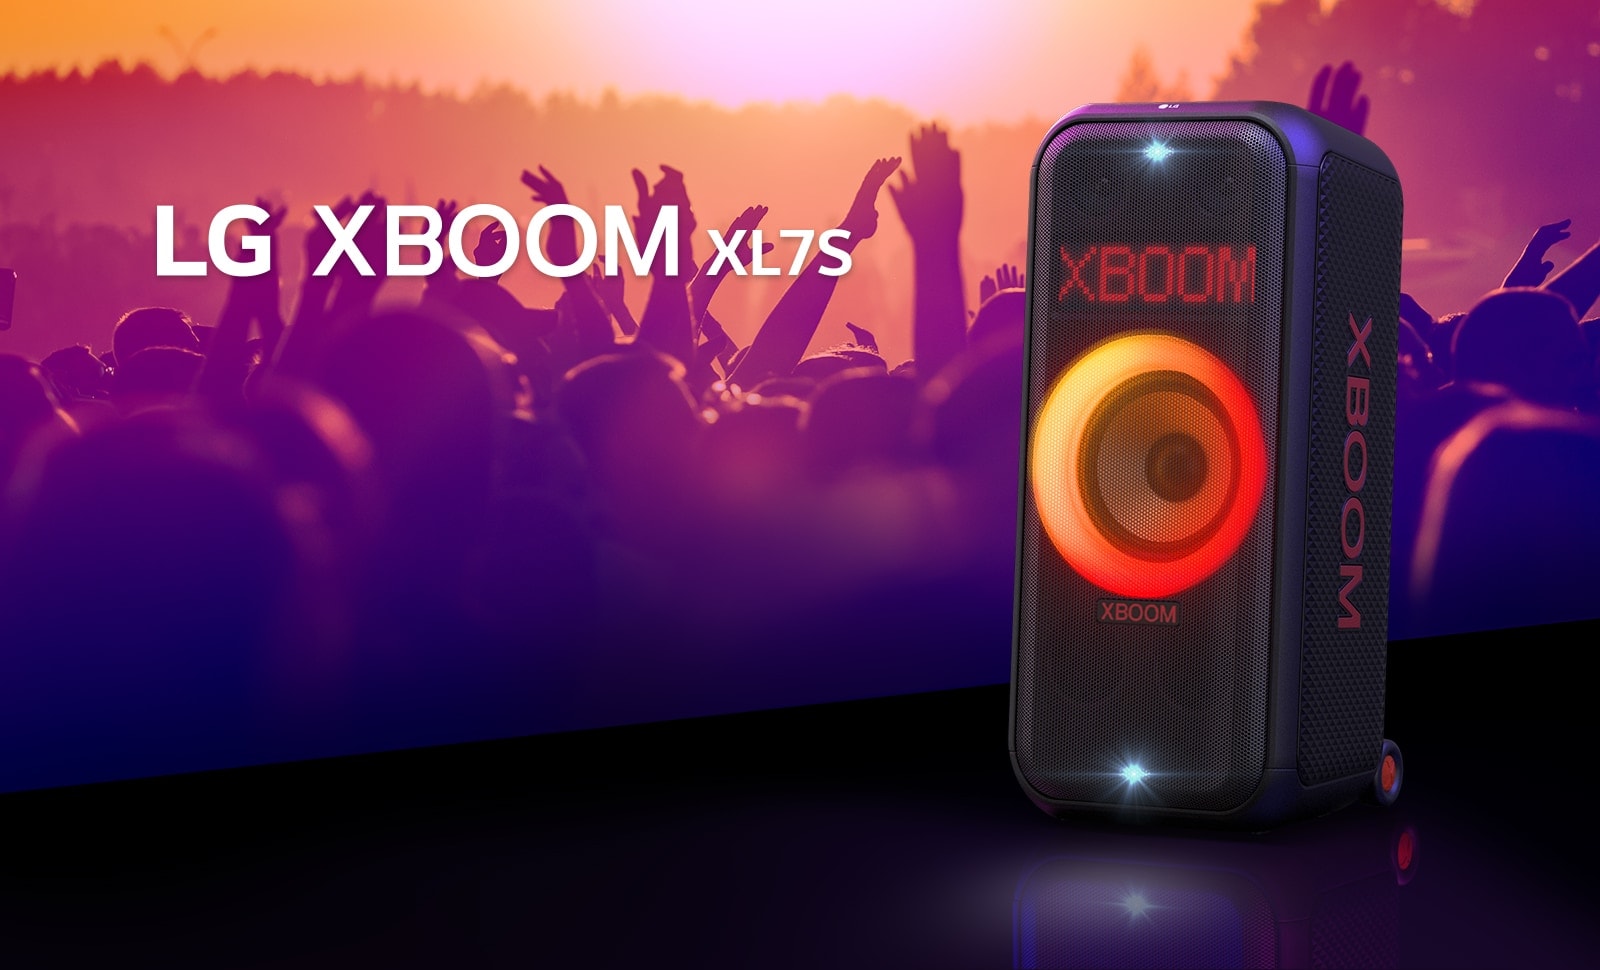 LG XBOOM XL7S este amplasat pe scenă cu lumini aprinse în gradiente roșii-portocalii. În spatele scenei, oamenii se bucură de muzică.